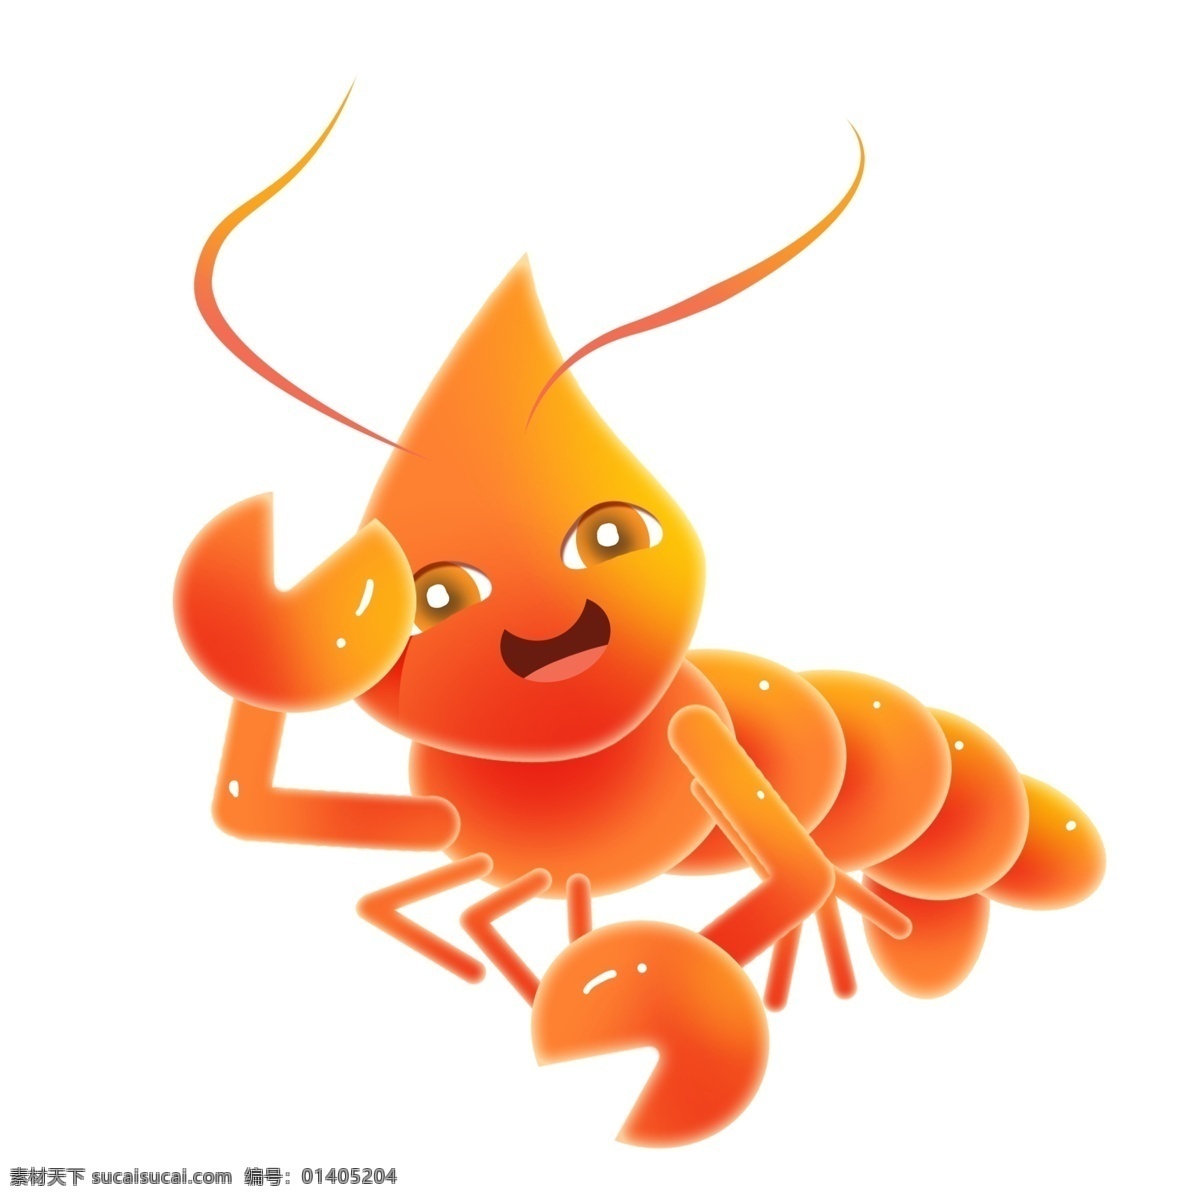 哭泣 的卡 通 龙虾 插画 海鲜 大虾 哭泣的龙虾 一只龙虾 可爱的龙虾 橙色龙虾 卡通龙虾